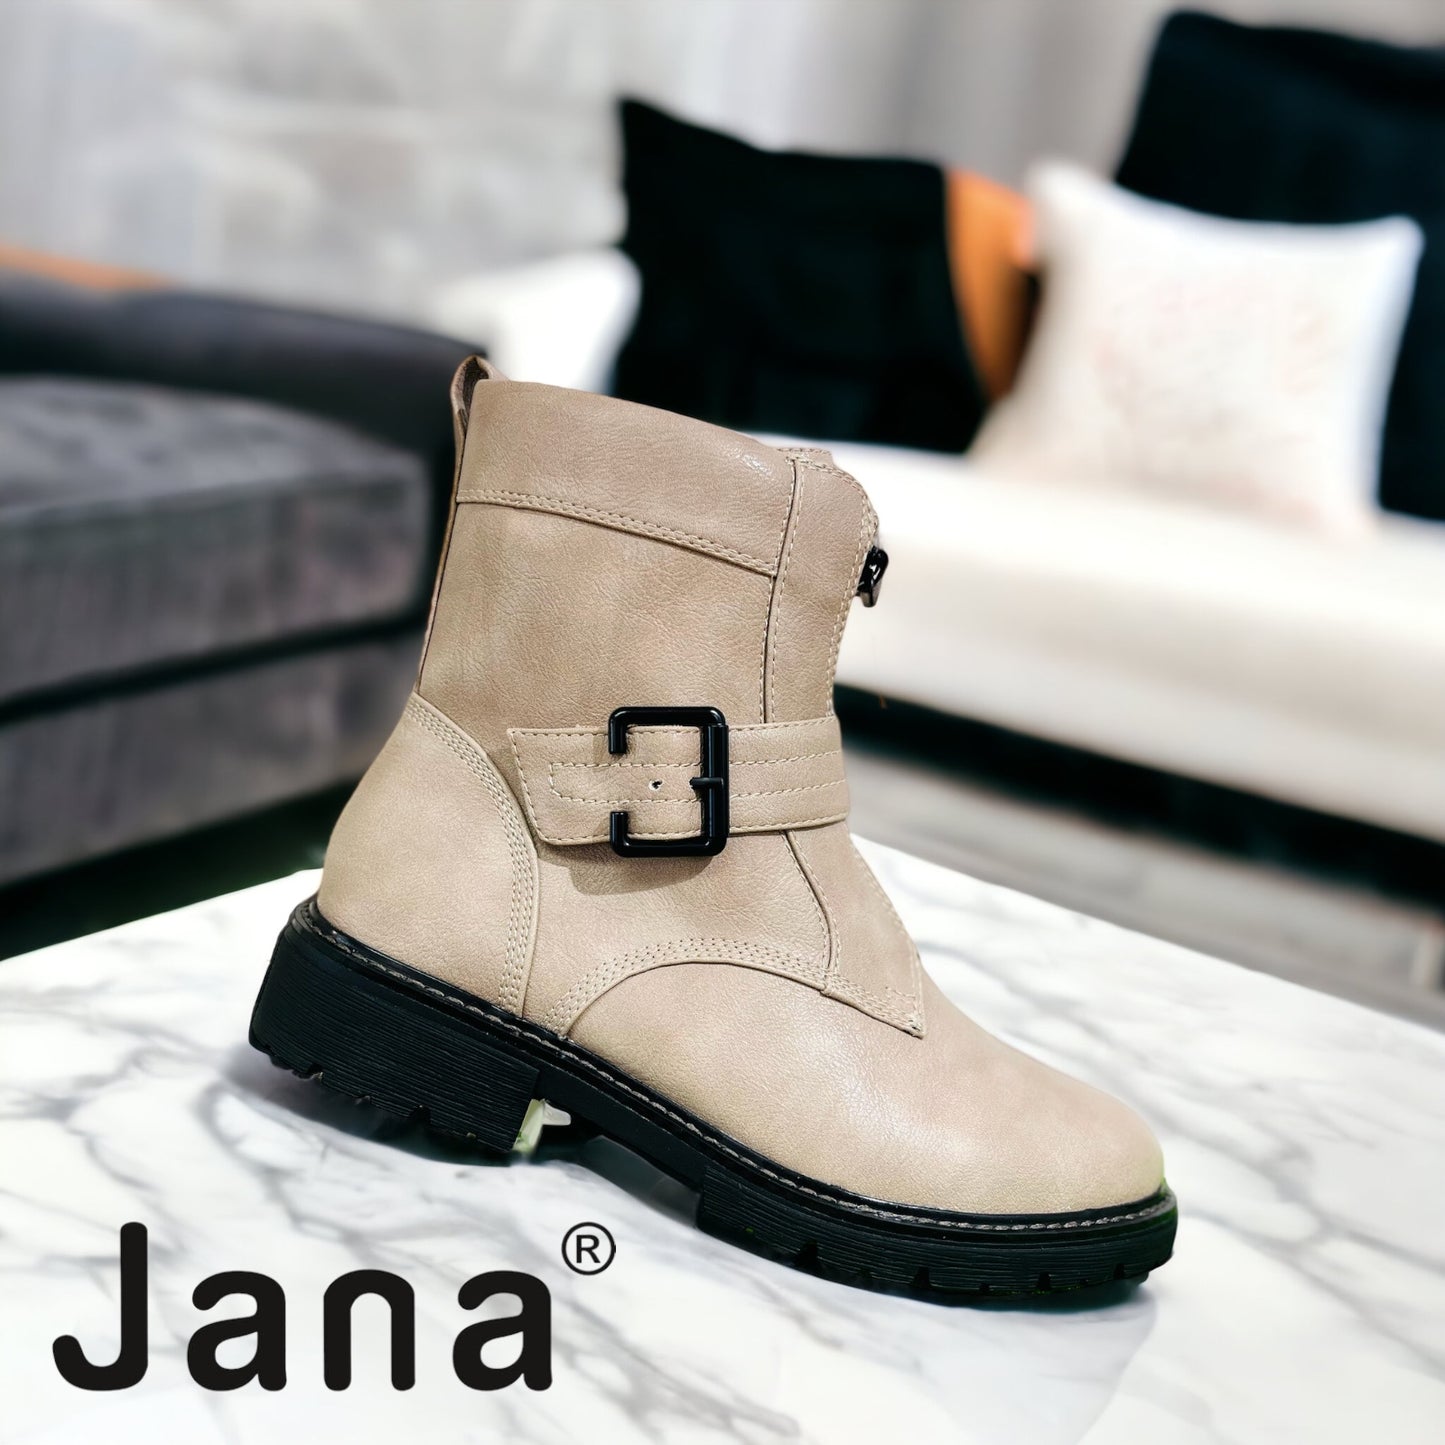 Jana stone boot 25470